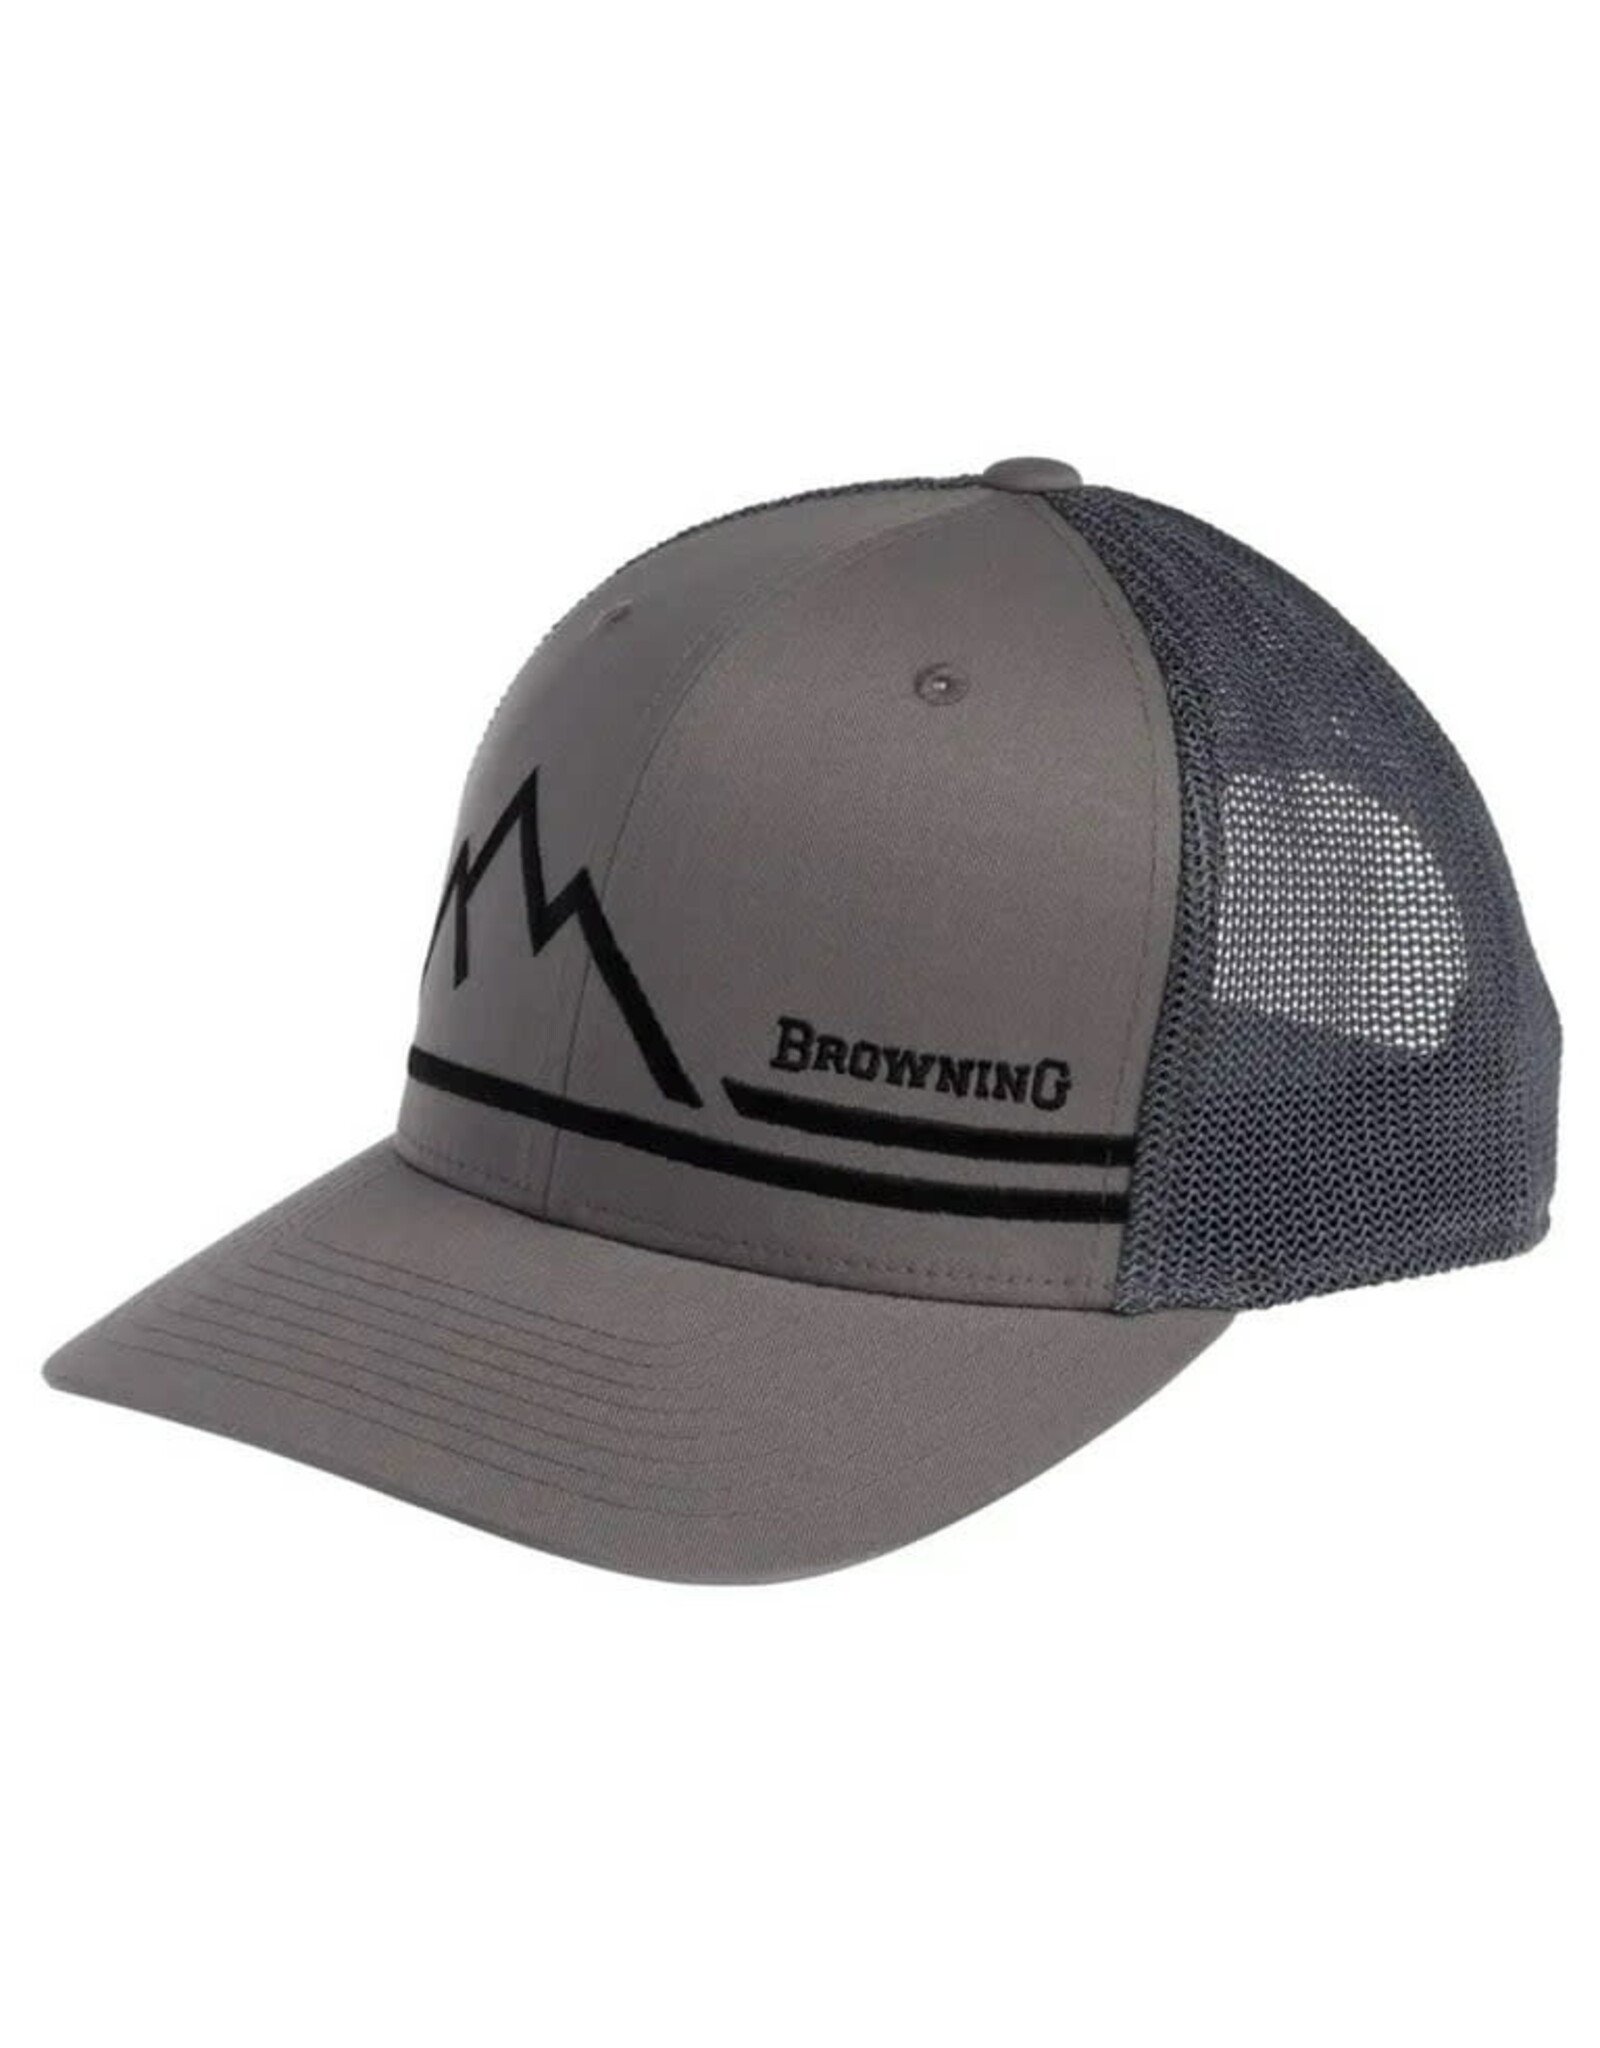 Browning Mountain Peak Cap - Gray